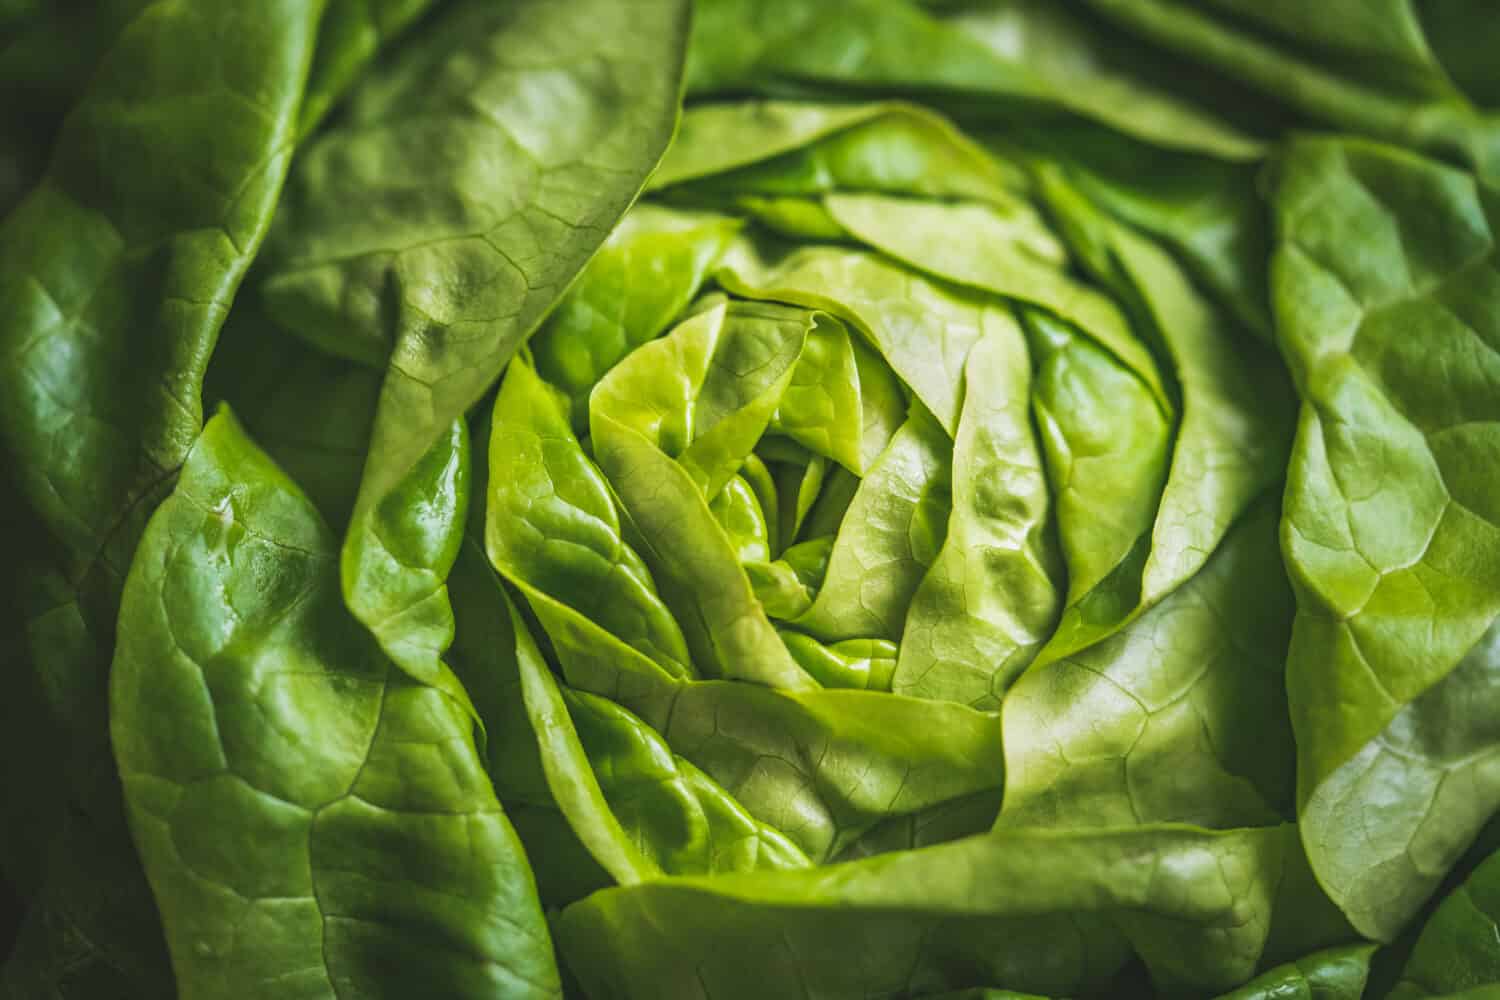 Green and fresh leaves of an organic Butterhead lettuce also known as Butter lettuce, Boston lettuce or Bibb lettuce.